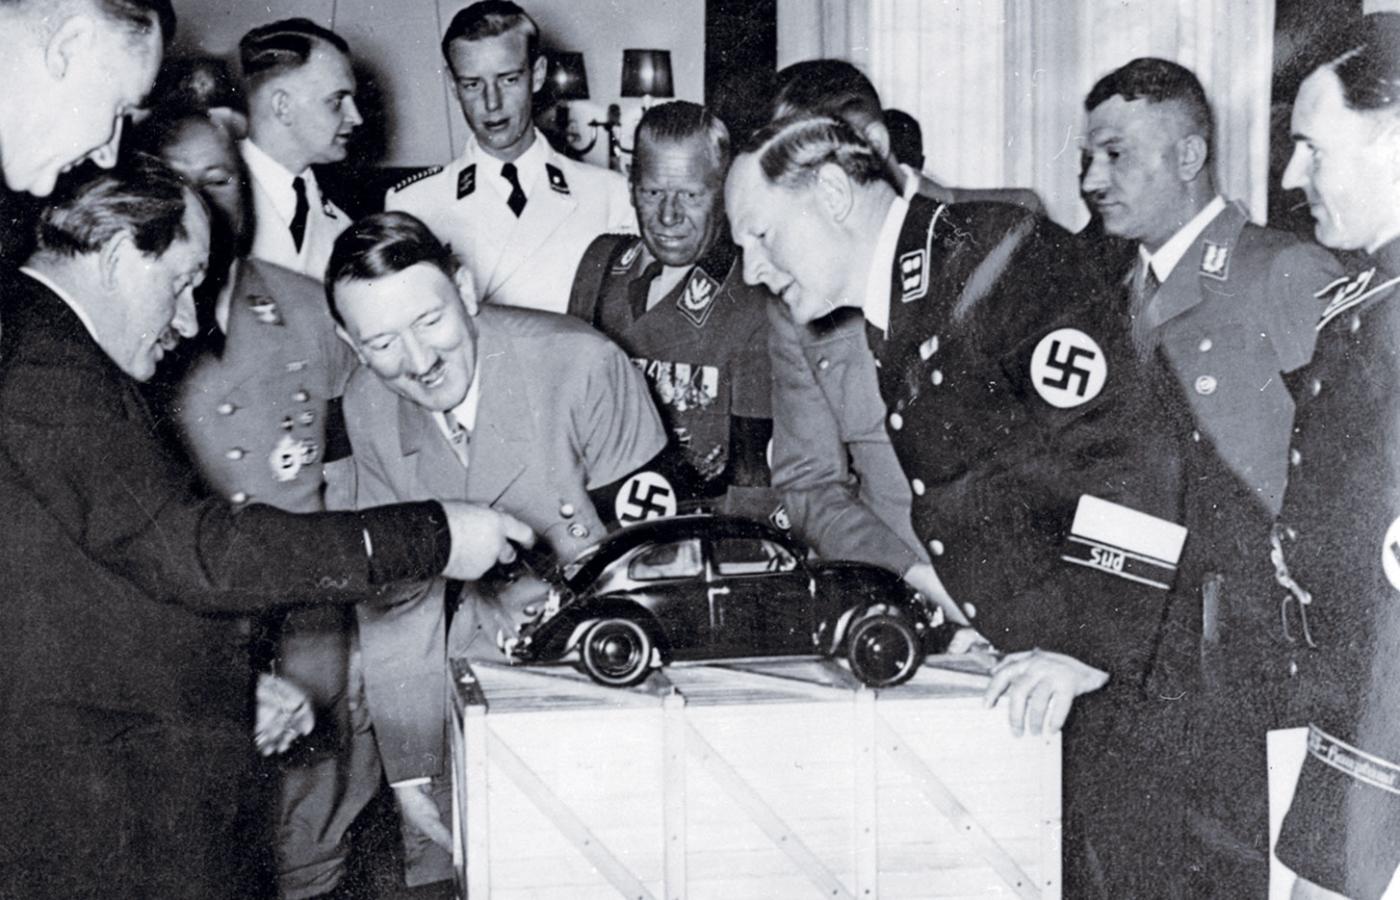 Hitlera cieszy Volkswagen. Znany niemiecki konstruktor pojazdów Ferdynand Porsche (z lewej) demonstruje Führerowi model popularnego samochodu dla ludu, 20 kwietnia 1938 r.